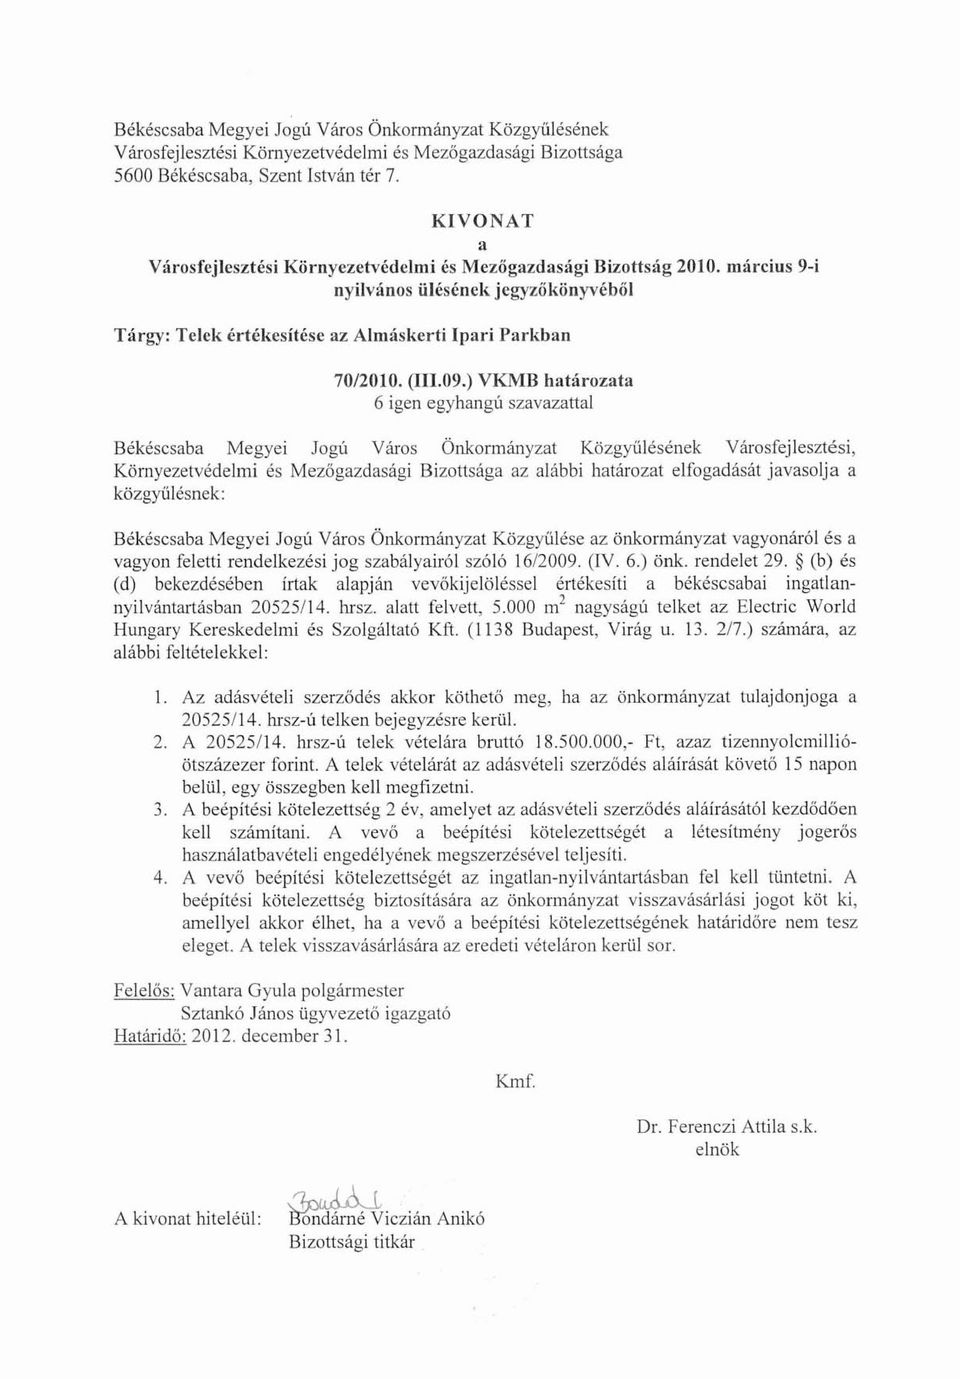 ) VKMB határozata 6 igen egyhangú szavazattal Békéscsaba Megyei Jogú Város Önkormányzat Közgyűlésének Városfejlesztési, Környezetvédelmi és Mezőgazdasági Bizottsága az alábbi határozat elfogadását